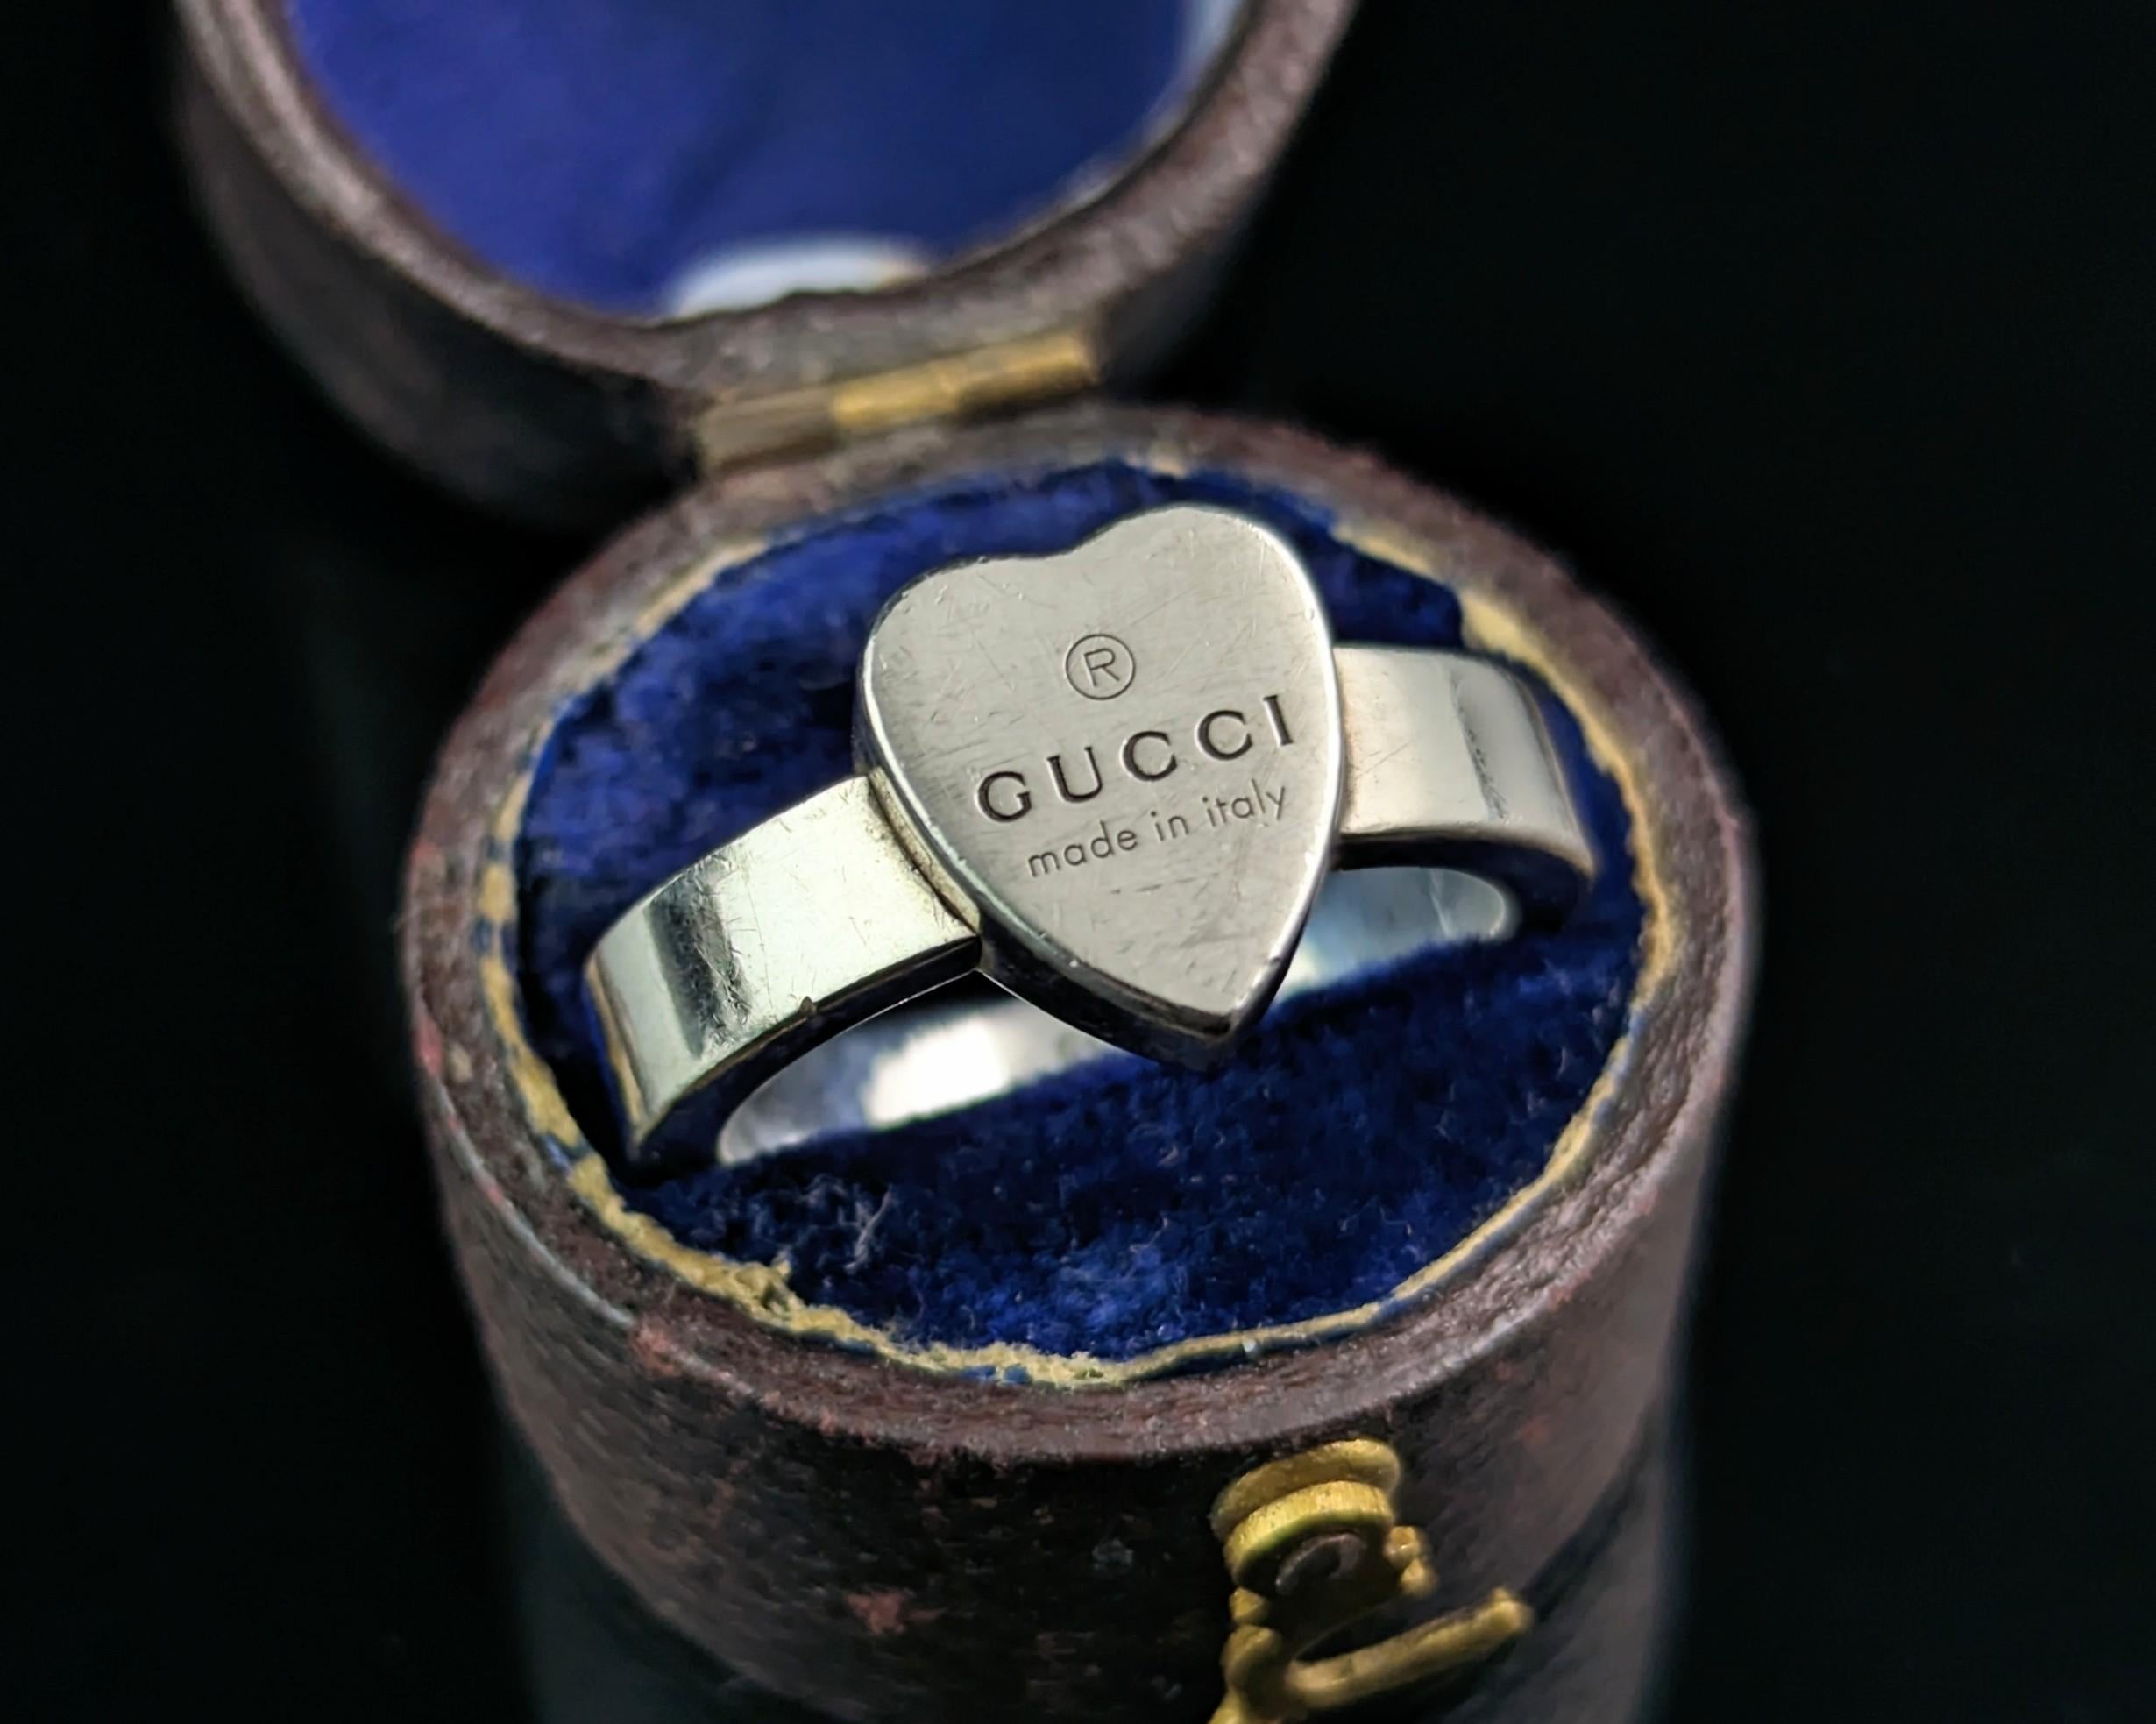 Ein stilvoller Gucci-Ring mit Herz aus Sterlingsilber.

Ein klassisches und zeitloses Stück aus den 2000er Jahren, ein klobiger Ring im Stil eines Siegelrings mit herzförmiger Oberfläche. 

Ein gutes, solides Stück, es kommt mit der ursprünglichen